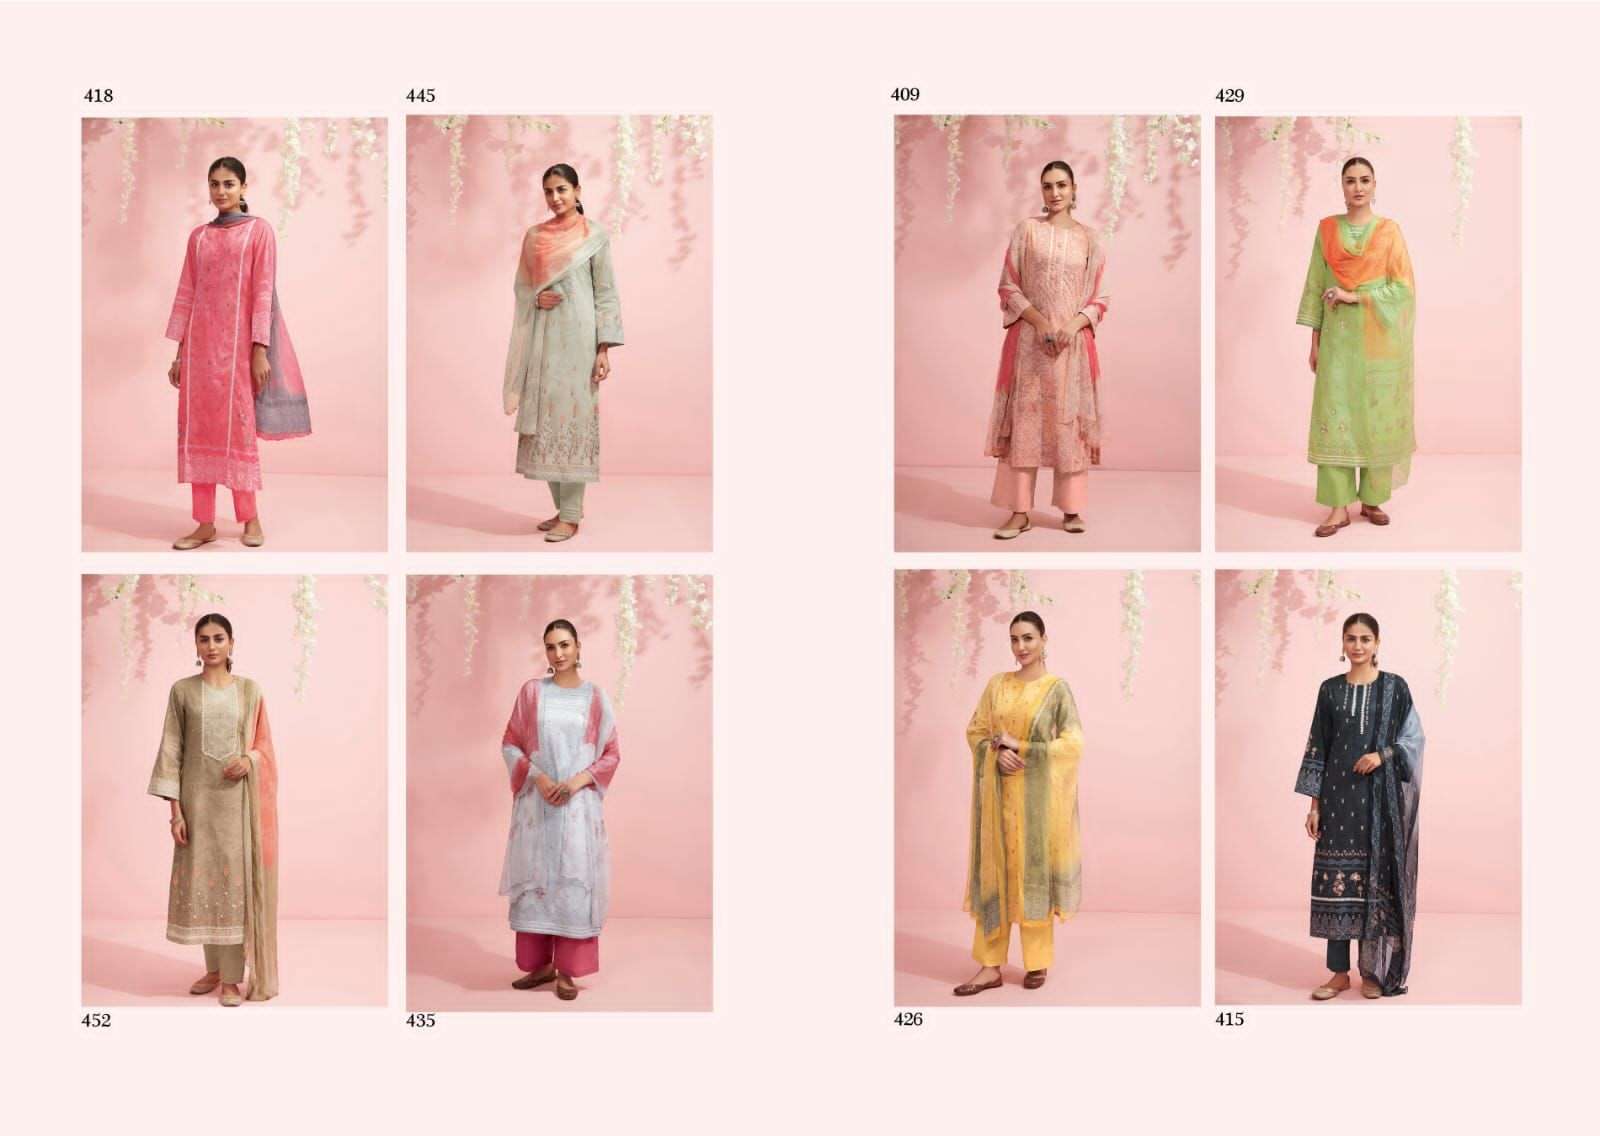 sahiba baani exclusive lawn cotton designer salwar kameez online shopping surat 